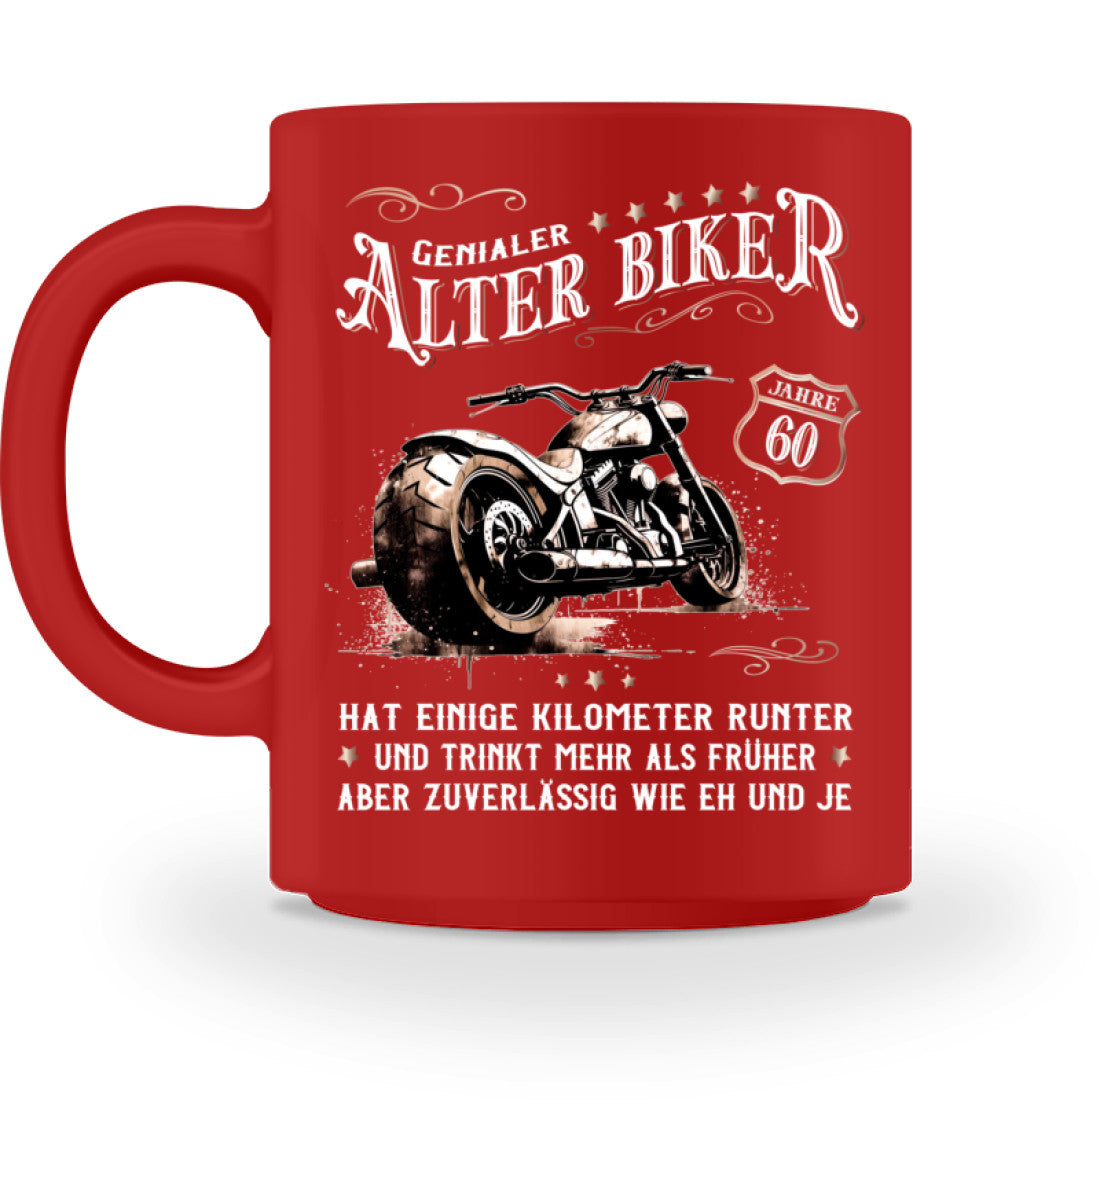 Eine Biker Geburtstags-Tasse für Motorradfahrer, von Wingbikers, mit dem beidseitigen Aufdruck, Alter Biker - 60 Jahre - Einige Kilometer runter, trinkt mehr - aber zuverlässig wie eh und je, in rot.